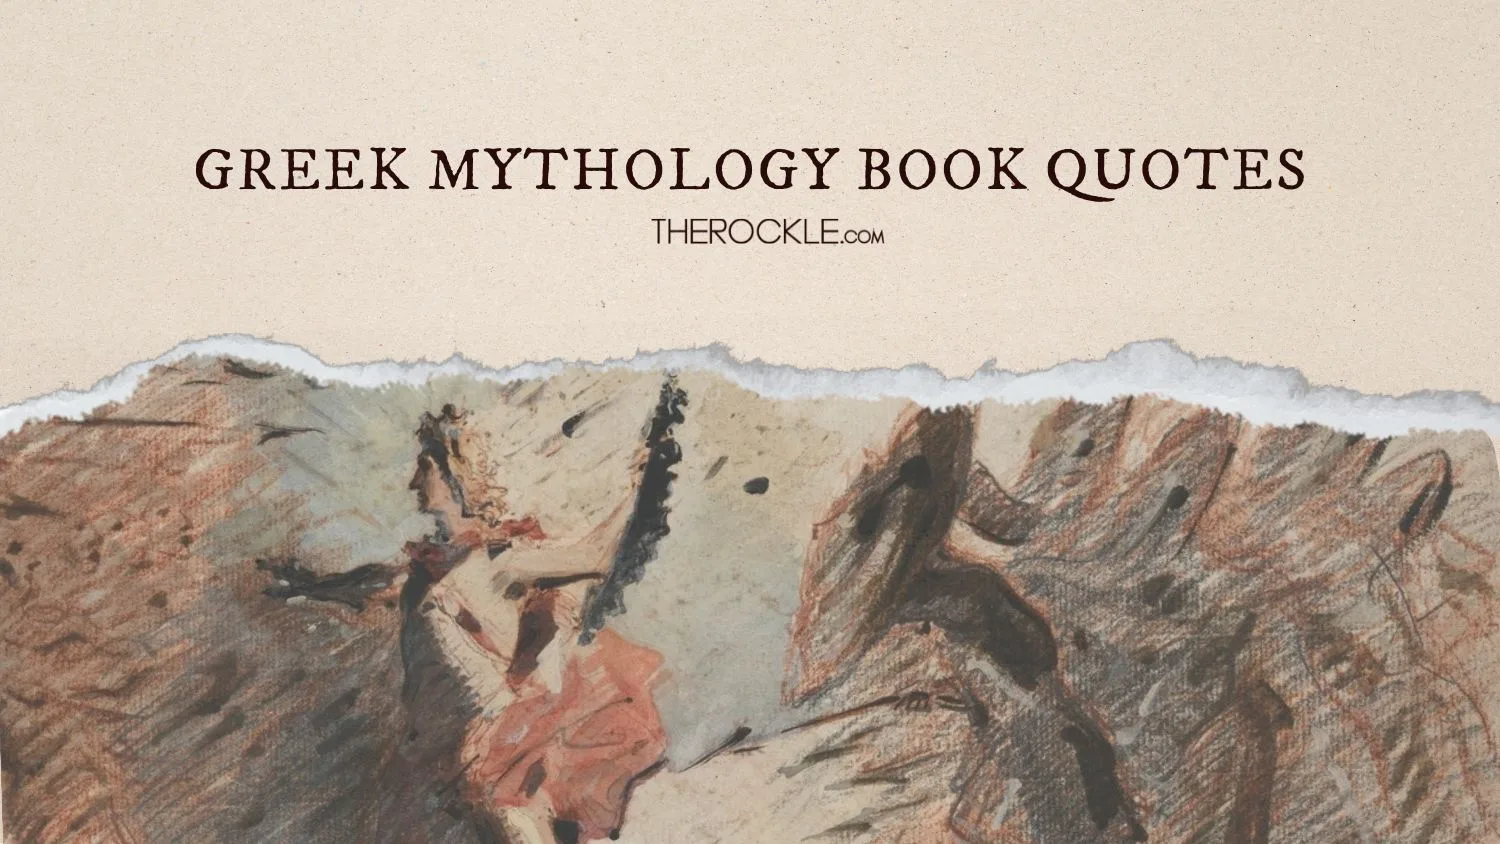 Greek mythology book quotes